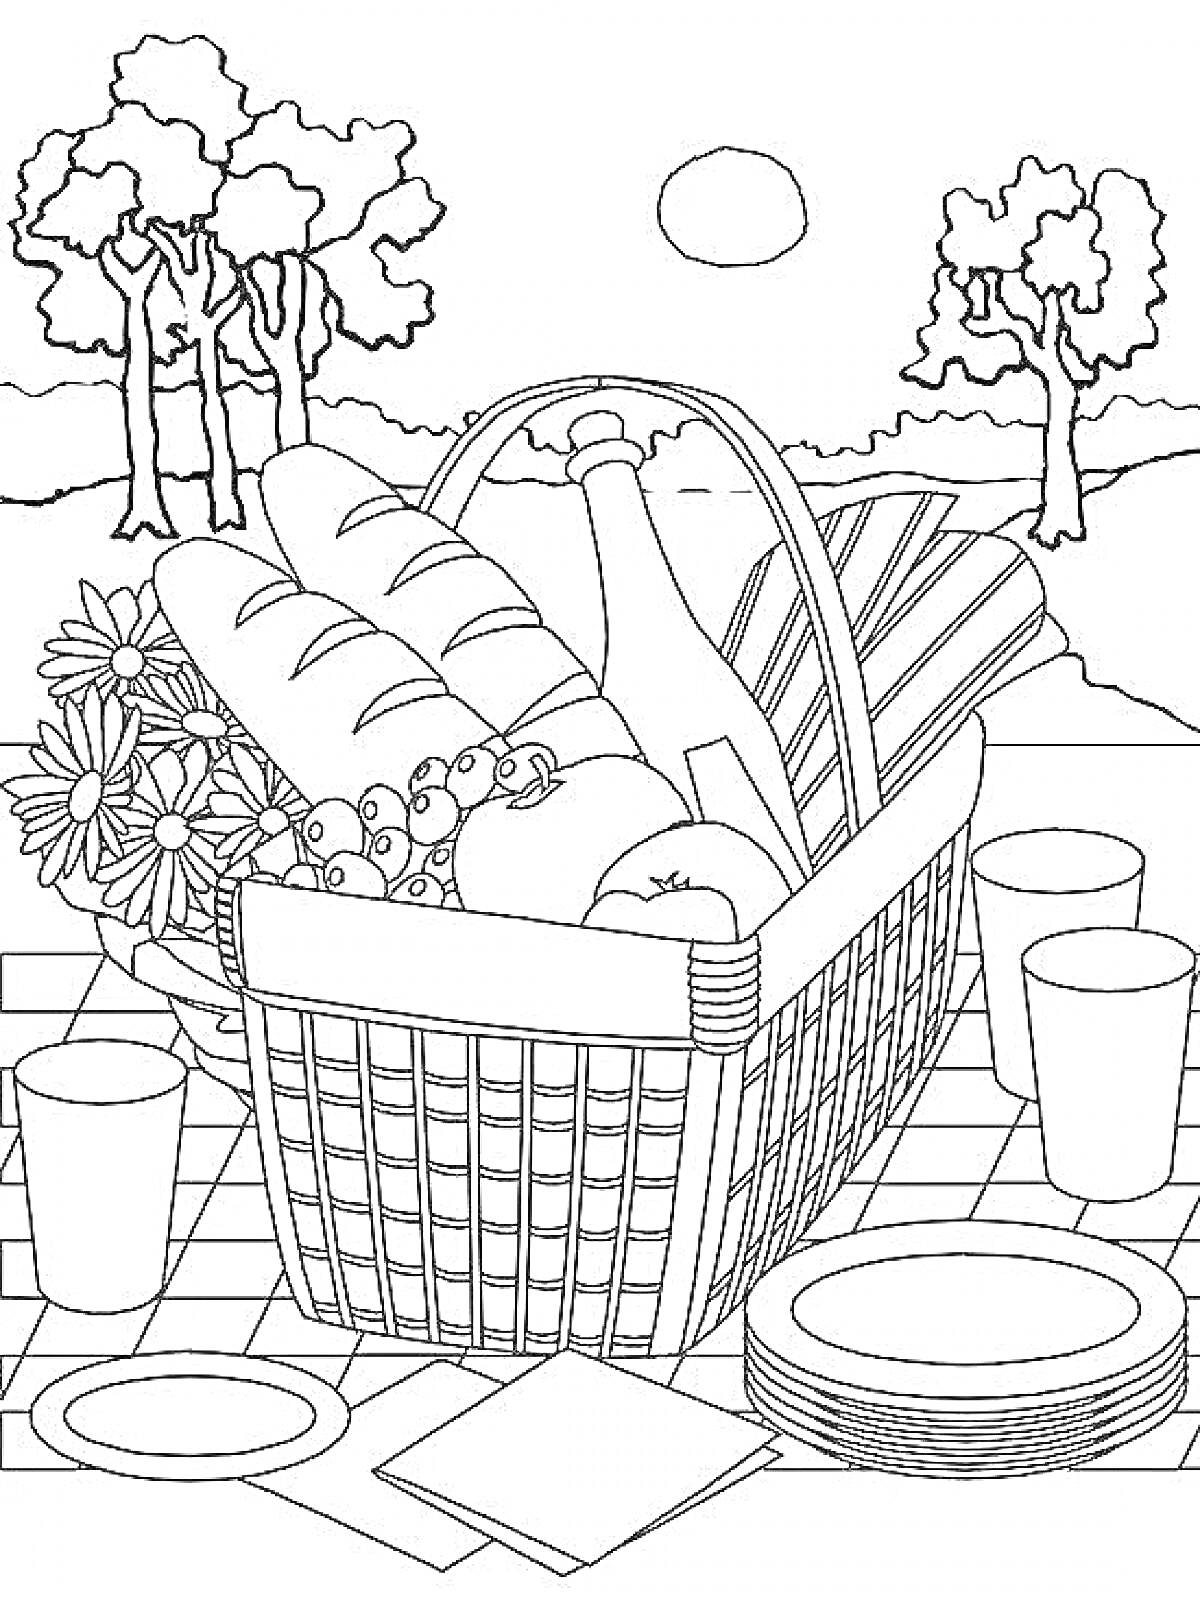 Раскраска Пикник с корзиной, хлебом, вином, фруктами, цветами, посудой и салфетками на фоне природы с деревьями и солнцем